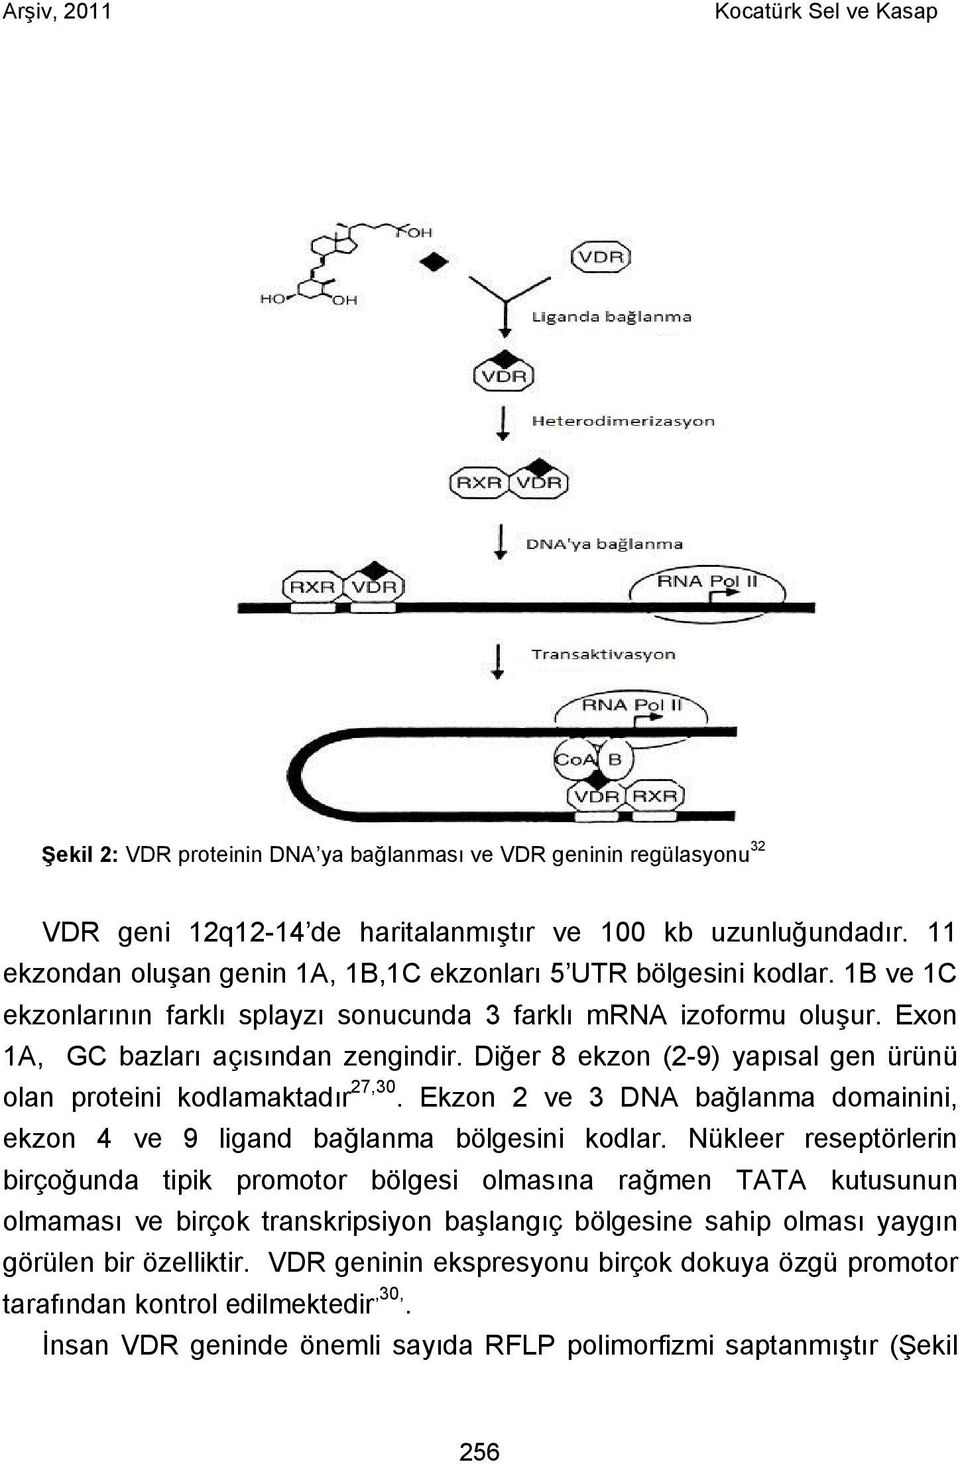 Diğer 8 ekzon (2-9) yapısal gen ürünü olan proteini kodlamaktadır 27,30. Ekzon 2 ve 3 DNA bağlanma domainini, ekzon 4 ve 9 ligand bağlanma bölgesini kodlar.